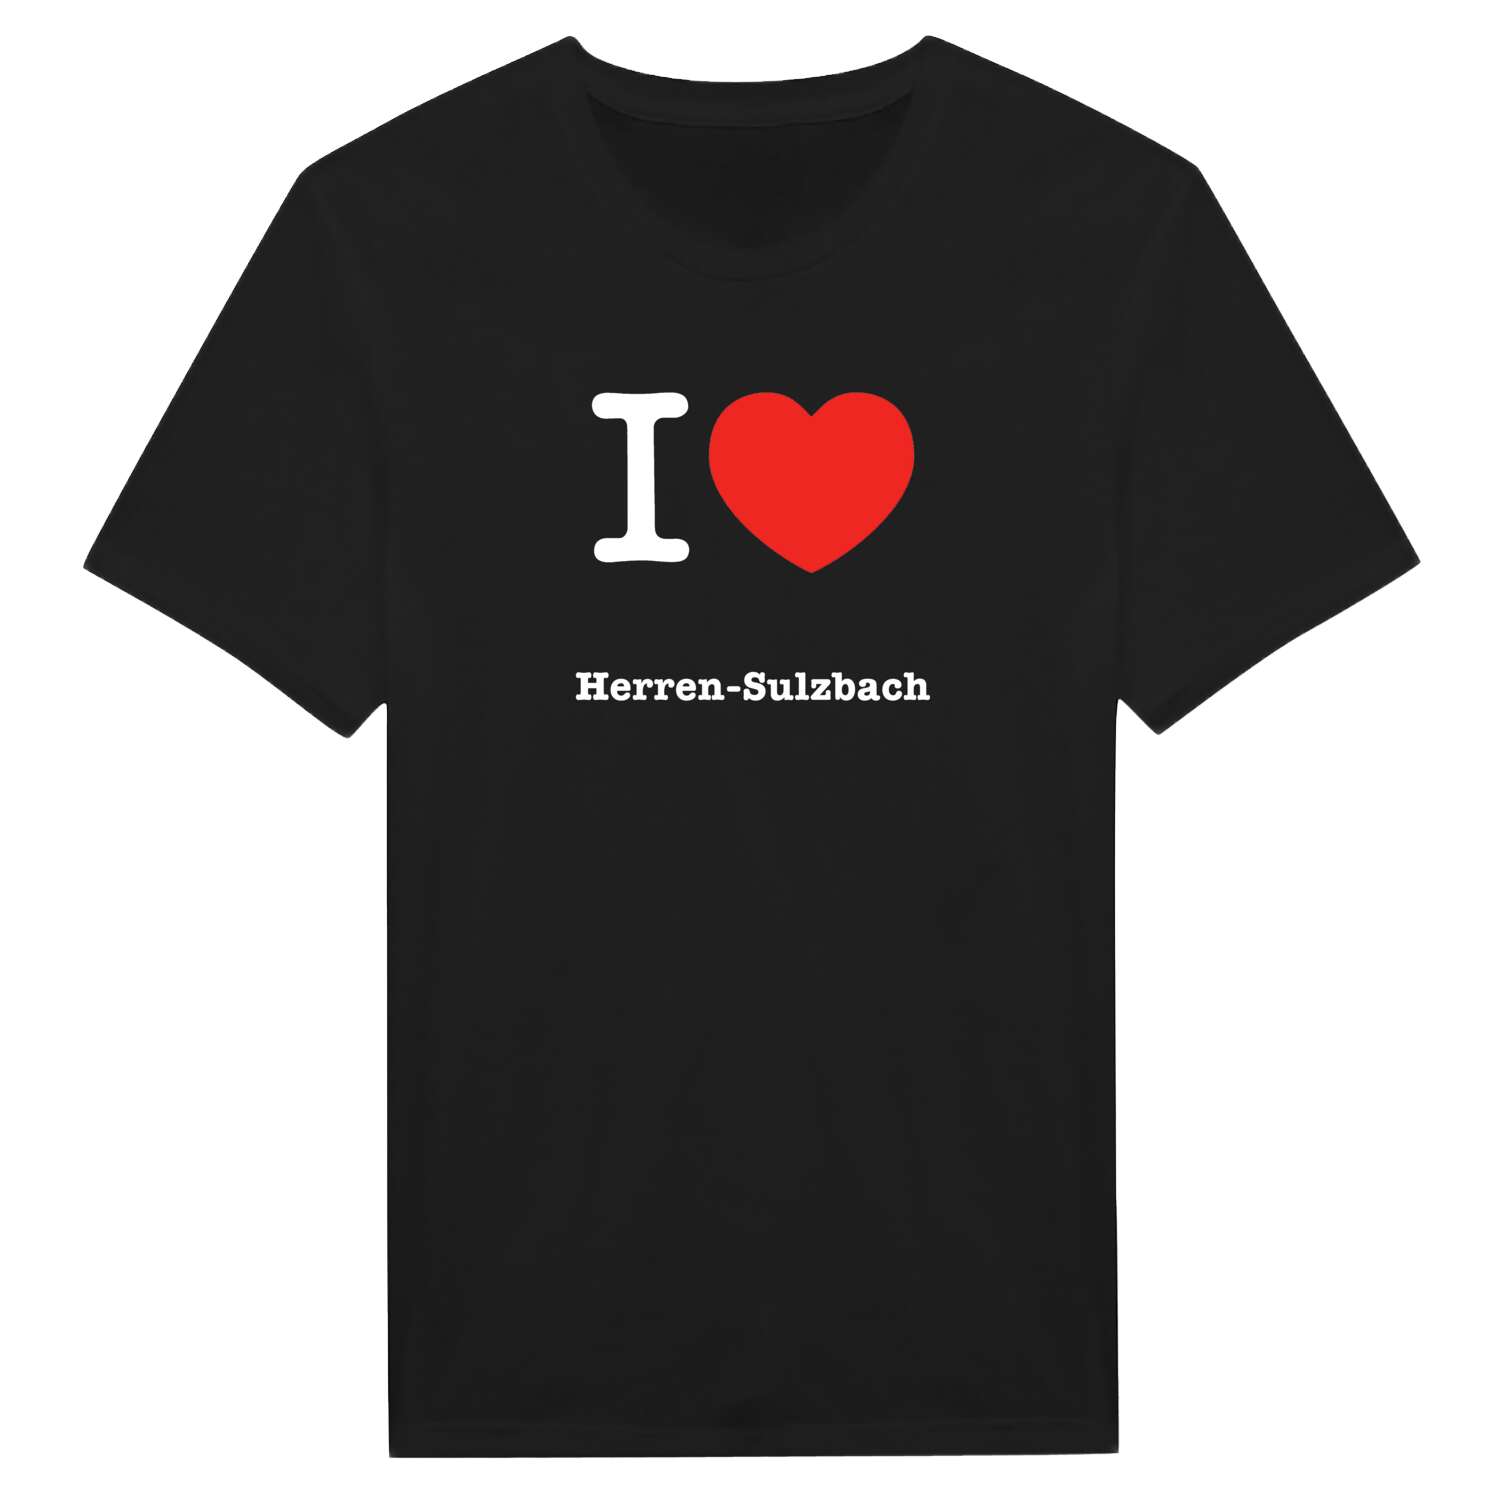 Herren-Sulzbach T-Shirt »I love«